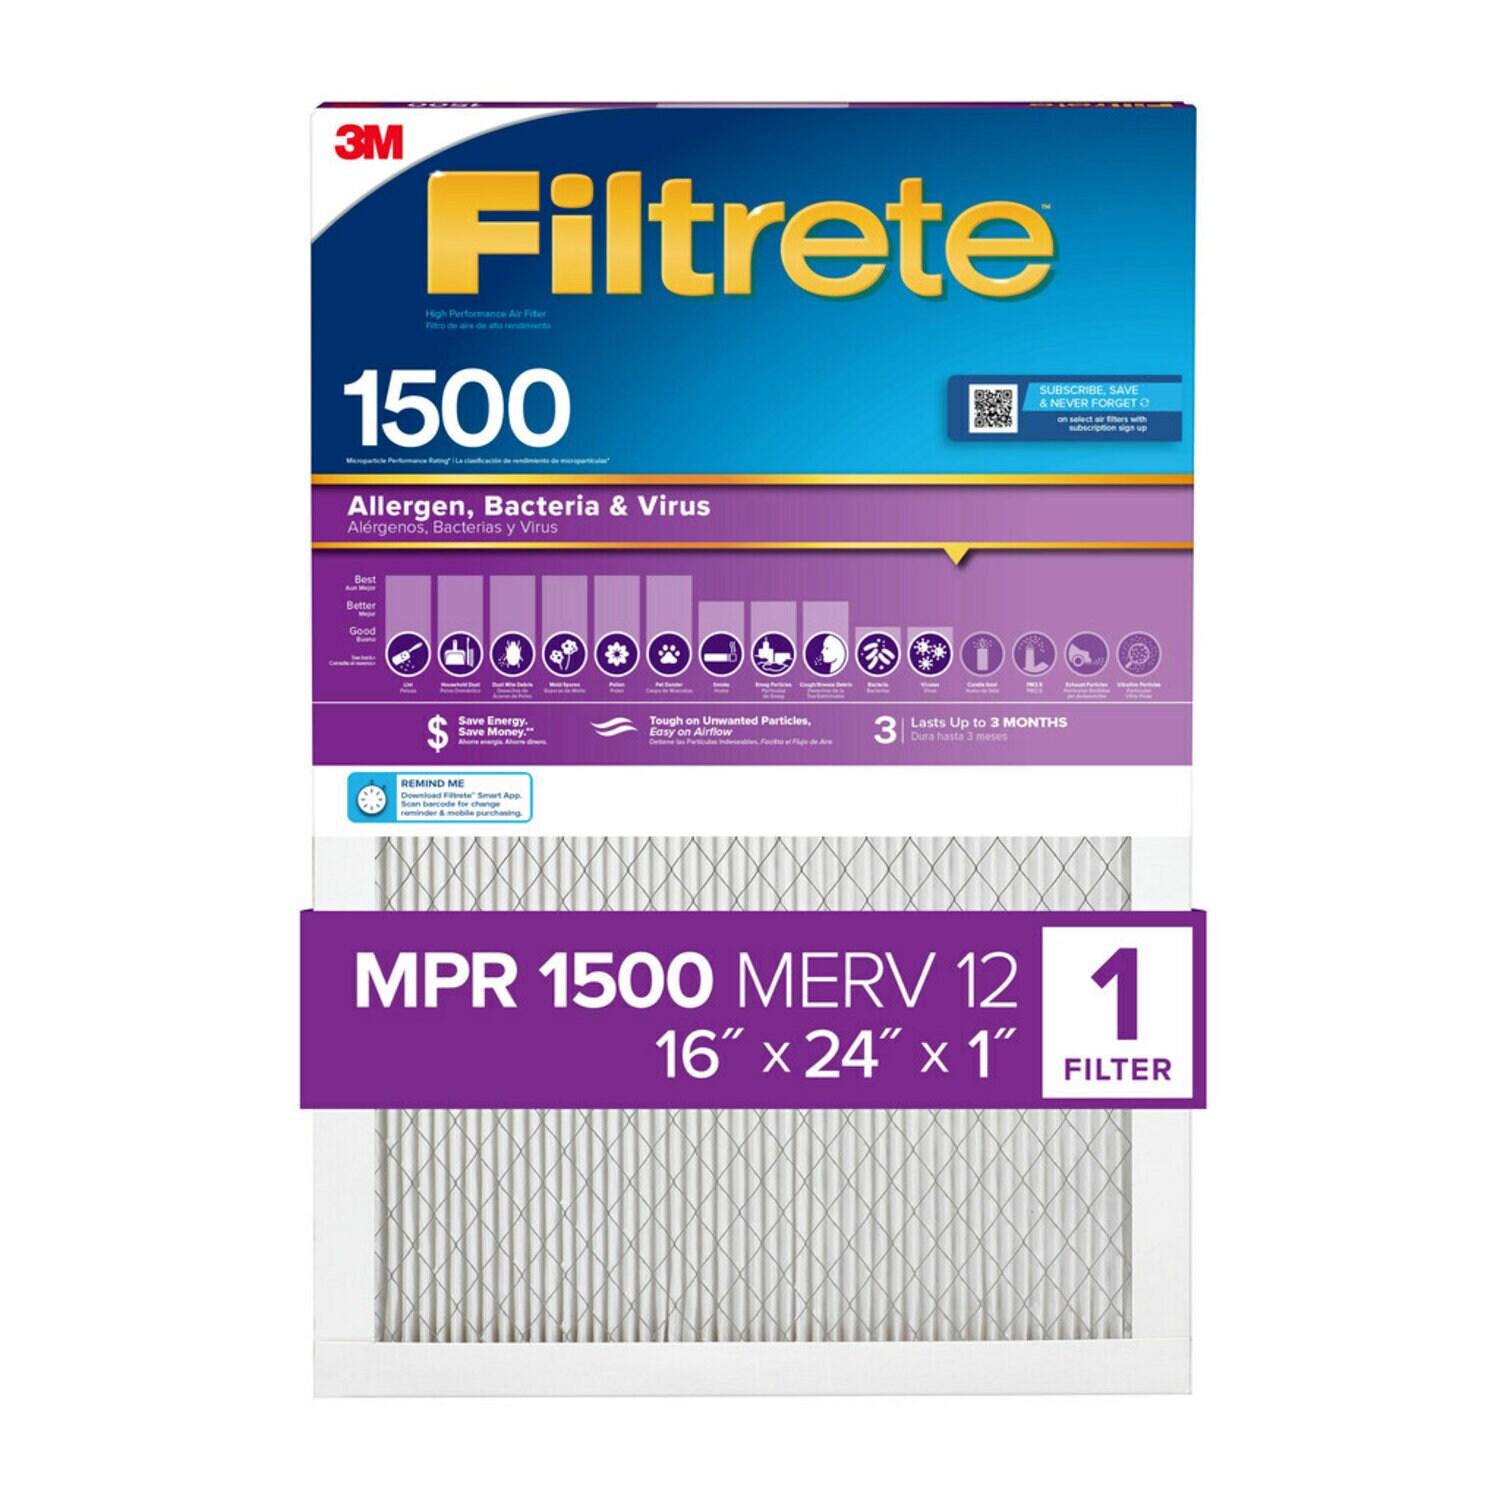 7100267954 - Filtrete High Performance Air Filter 1500 MPR 2025DC-4, 16 in x 24 in x 1 in (40.6 cm x 60.9 cm x 2.5 cm)